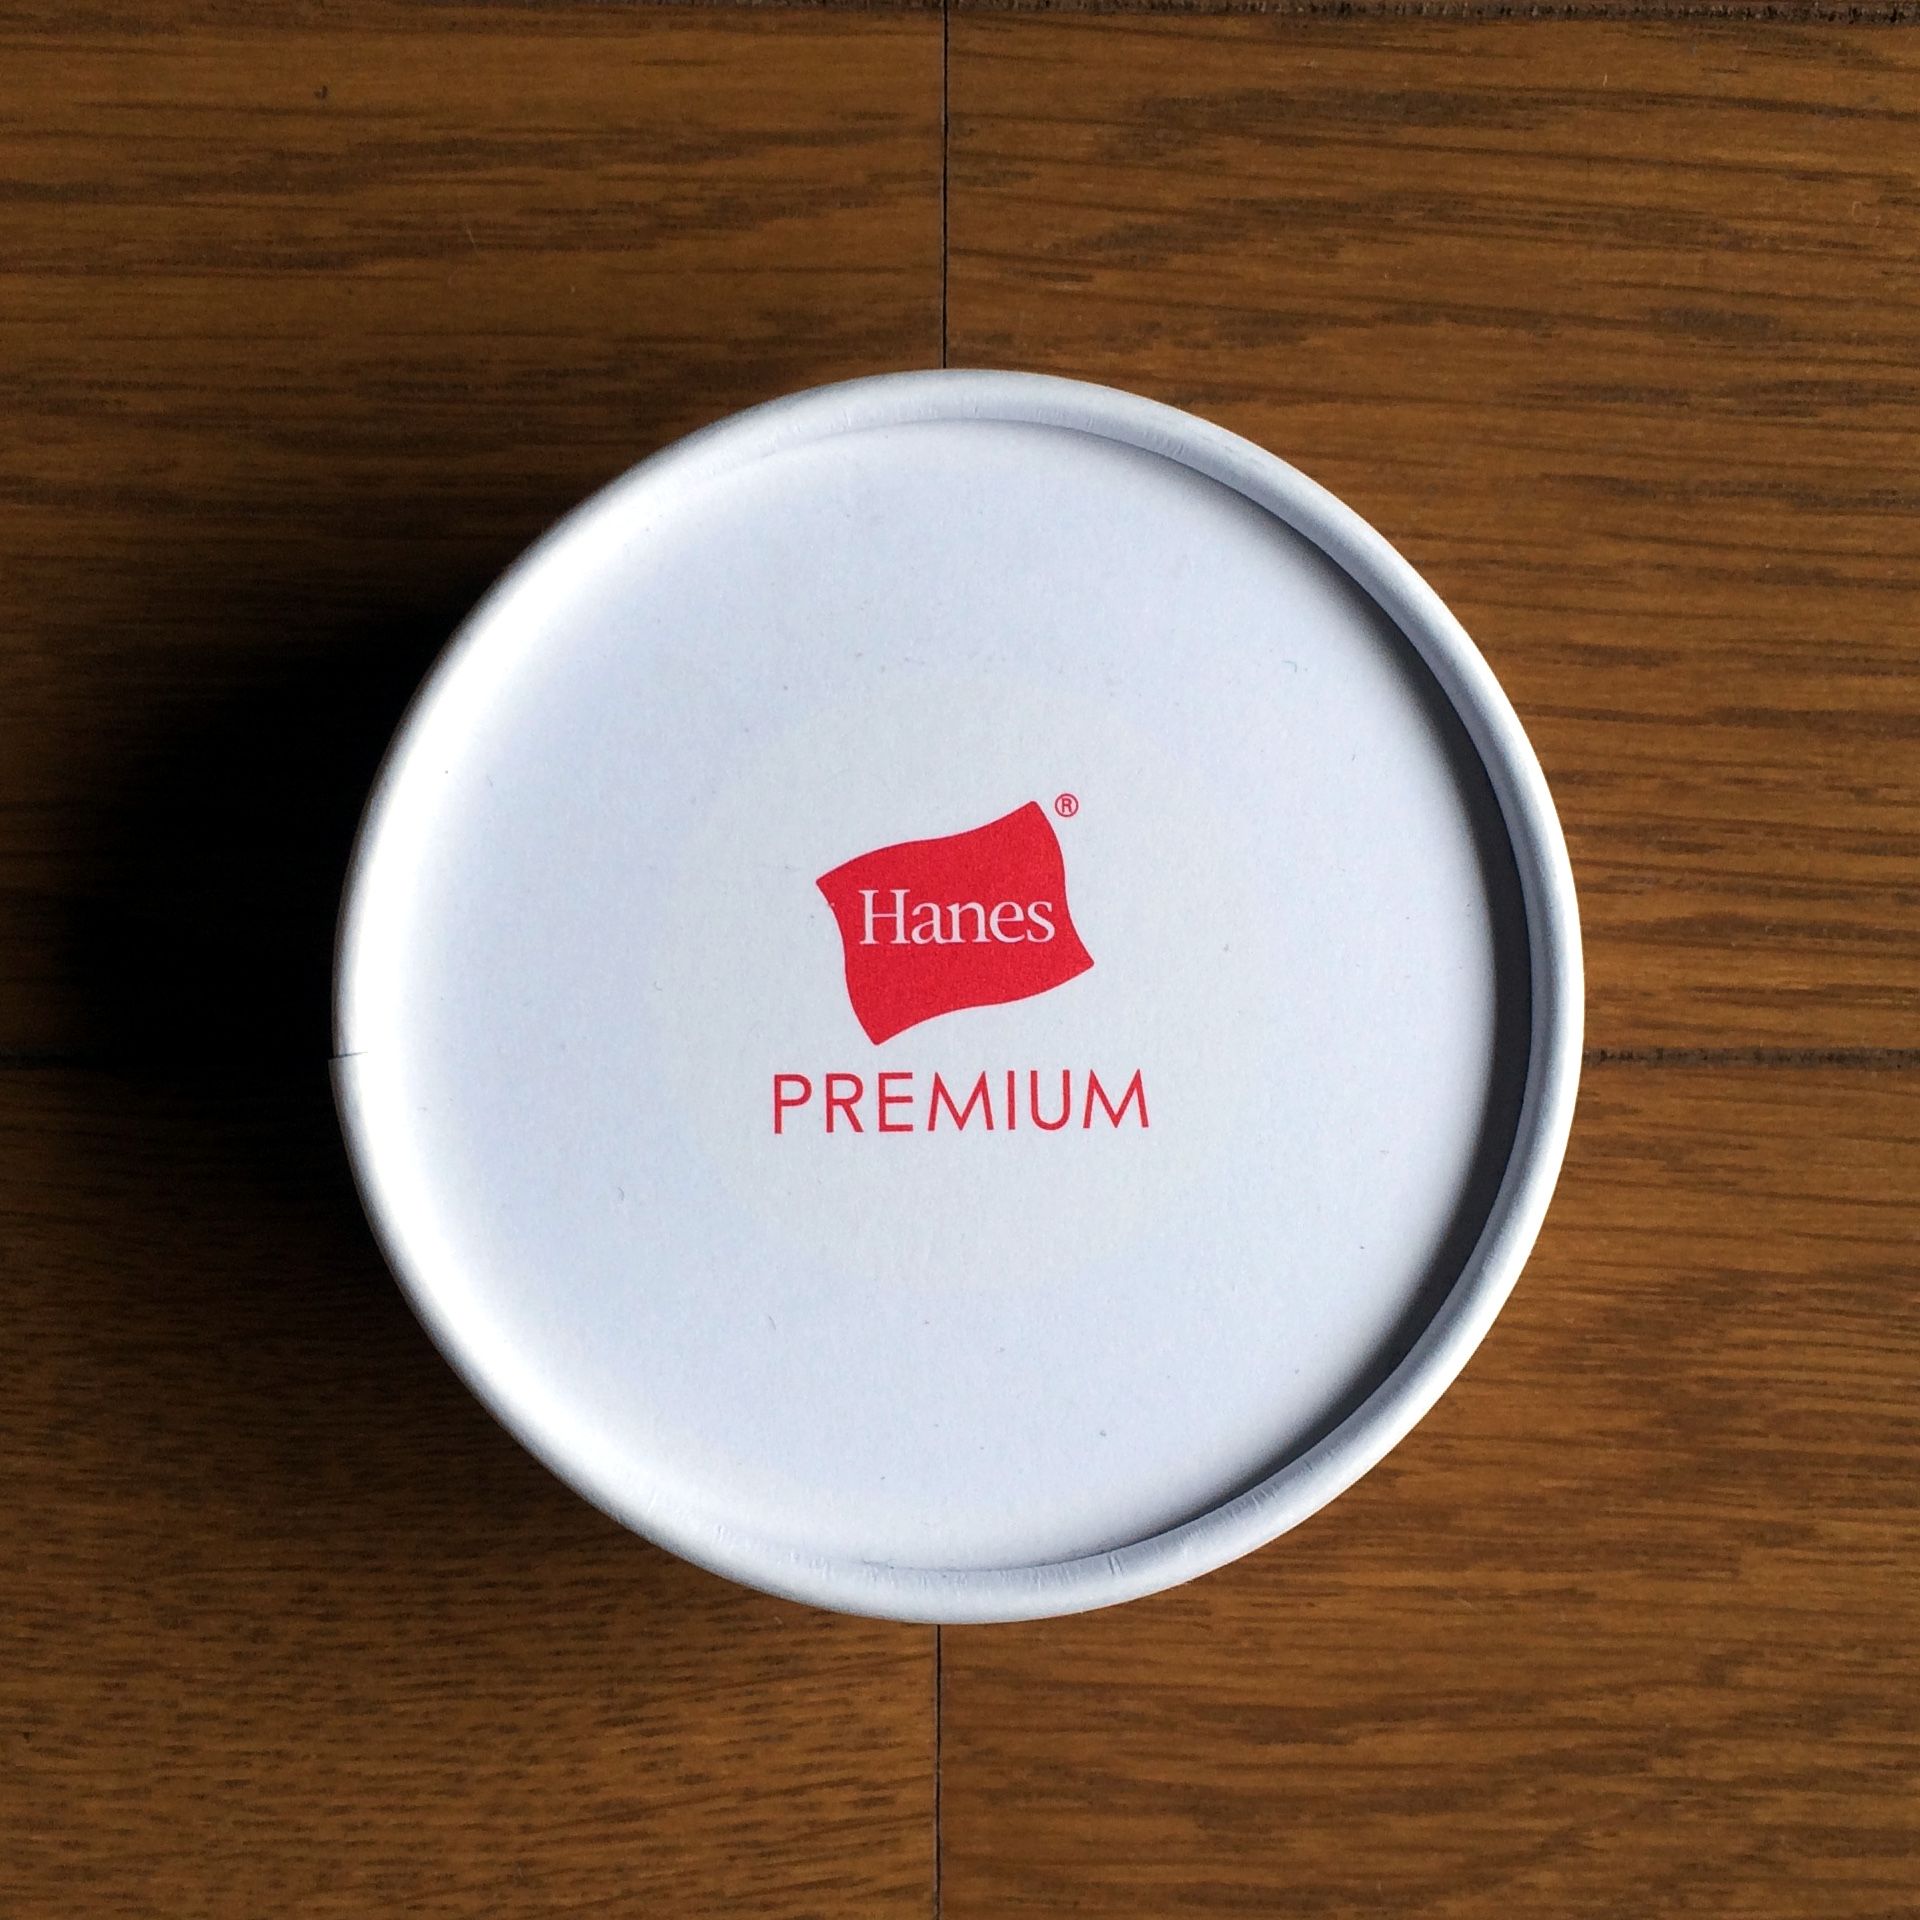 Hanes PREMIUMのロゴだけが印刷されている蓋。